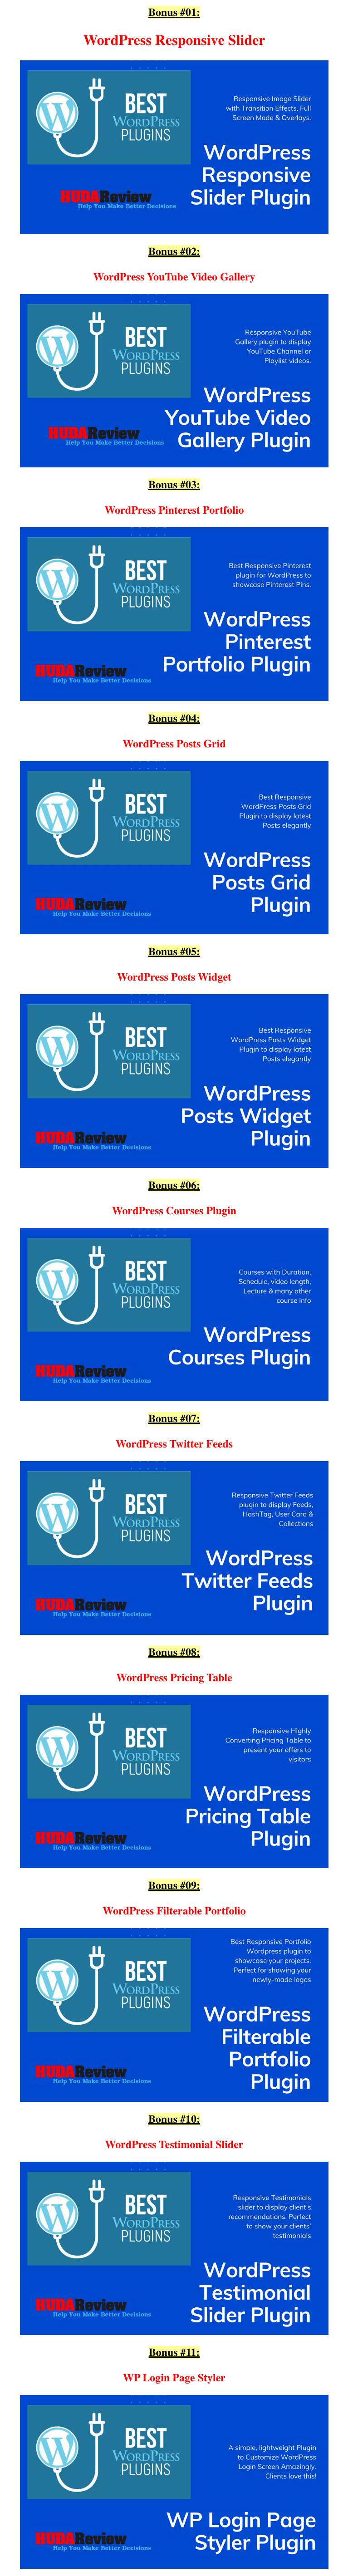 WordPress-Plugins-Bonuses